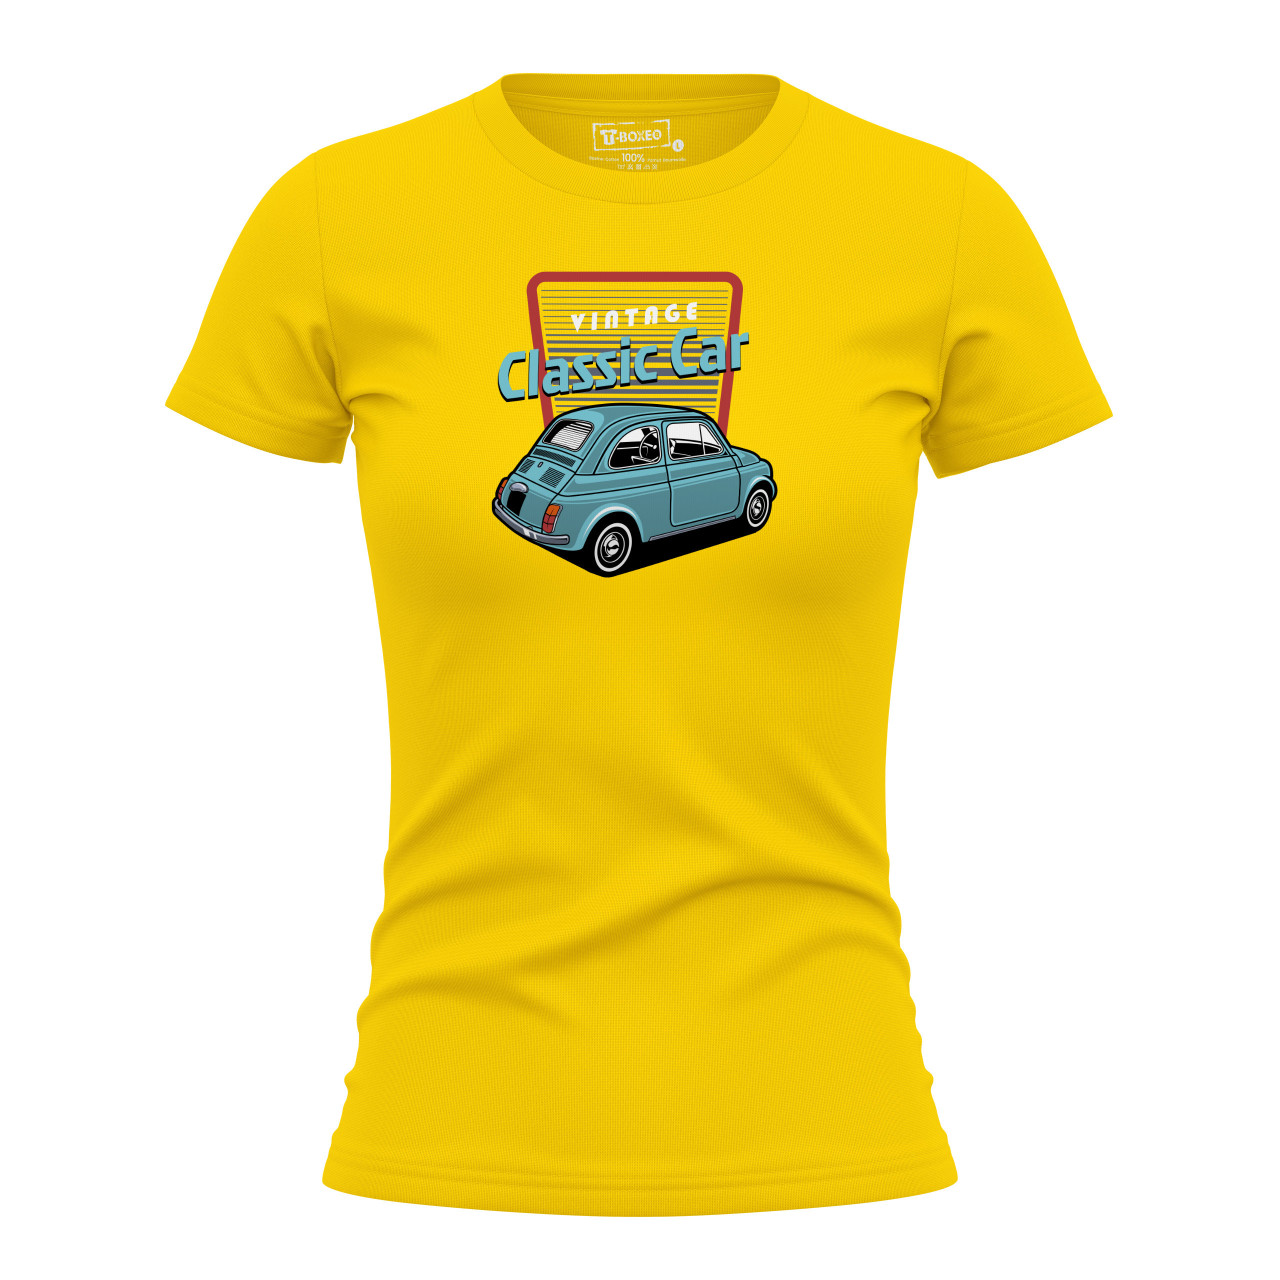 Dámské tričko s potiskem "Vintage Classic Car, Fiat 500"